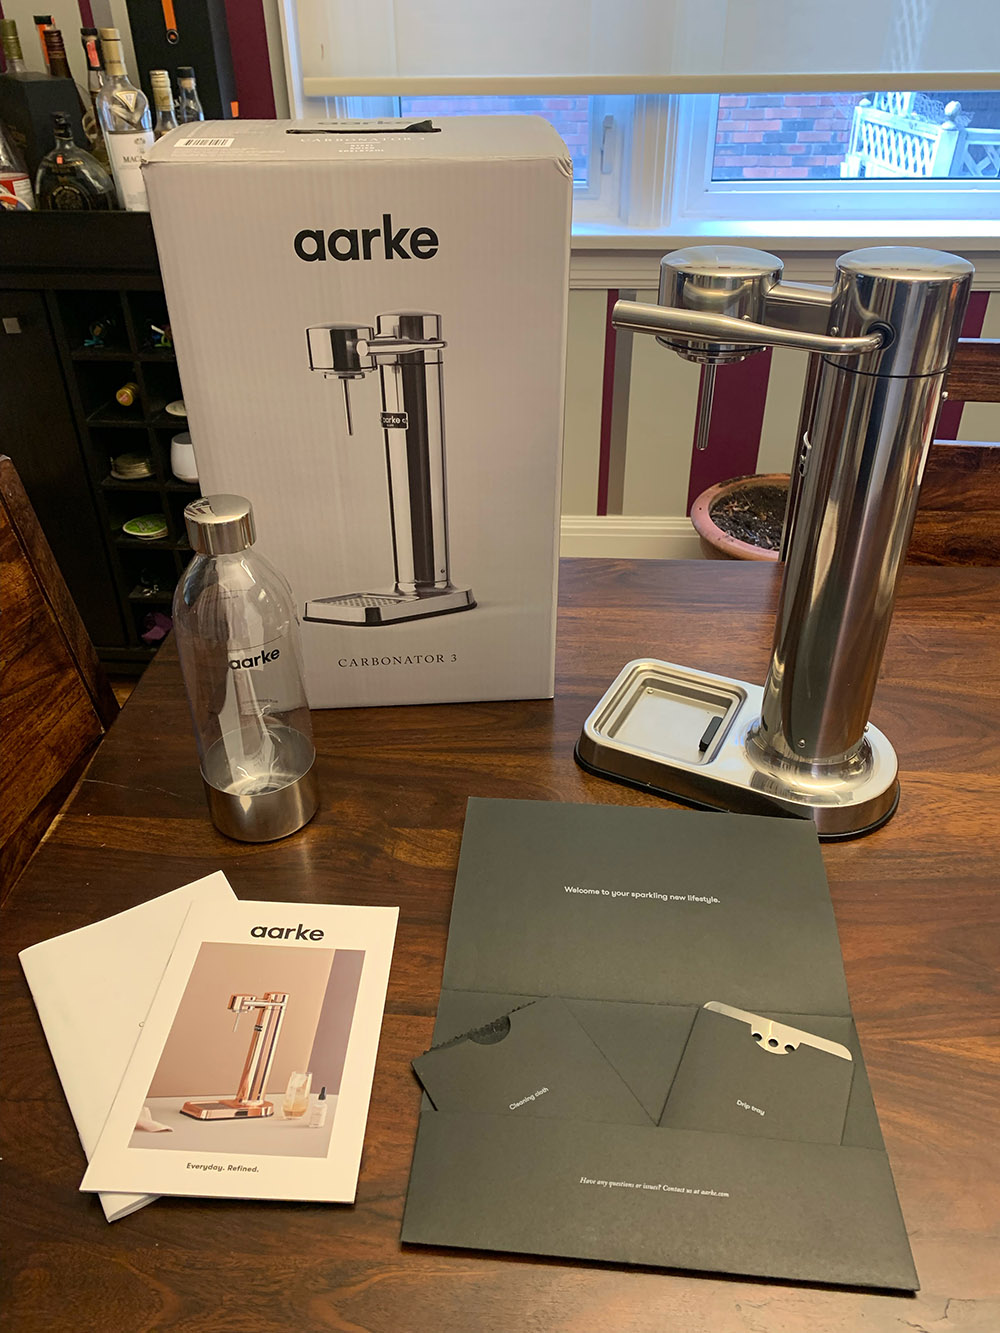 Aarke Carbonator III Review - Reviewed